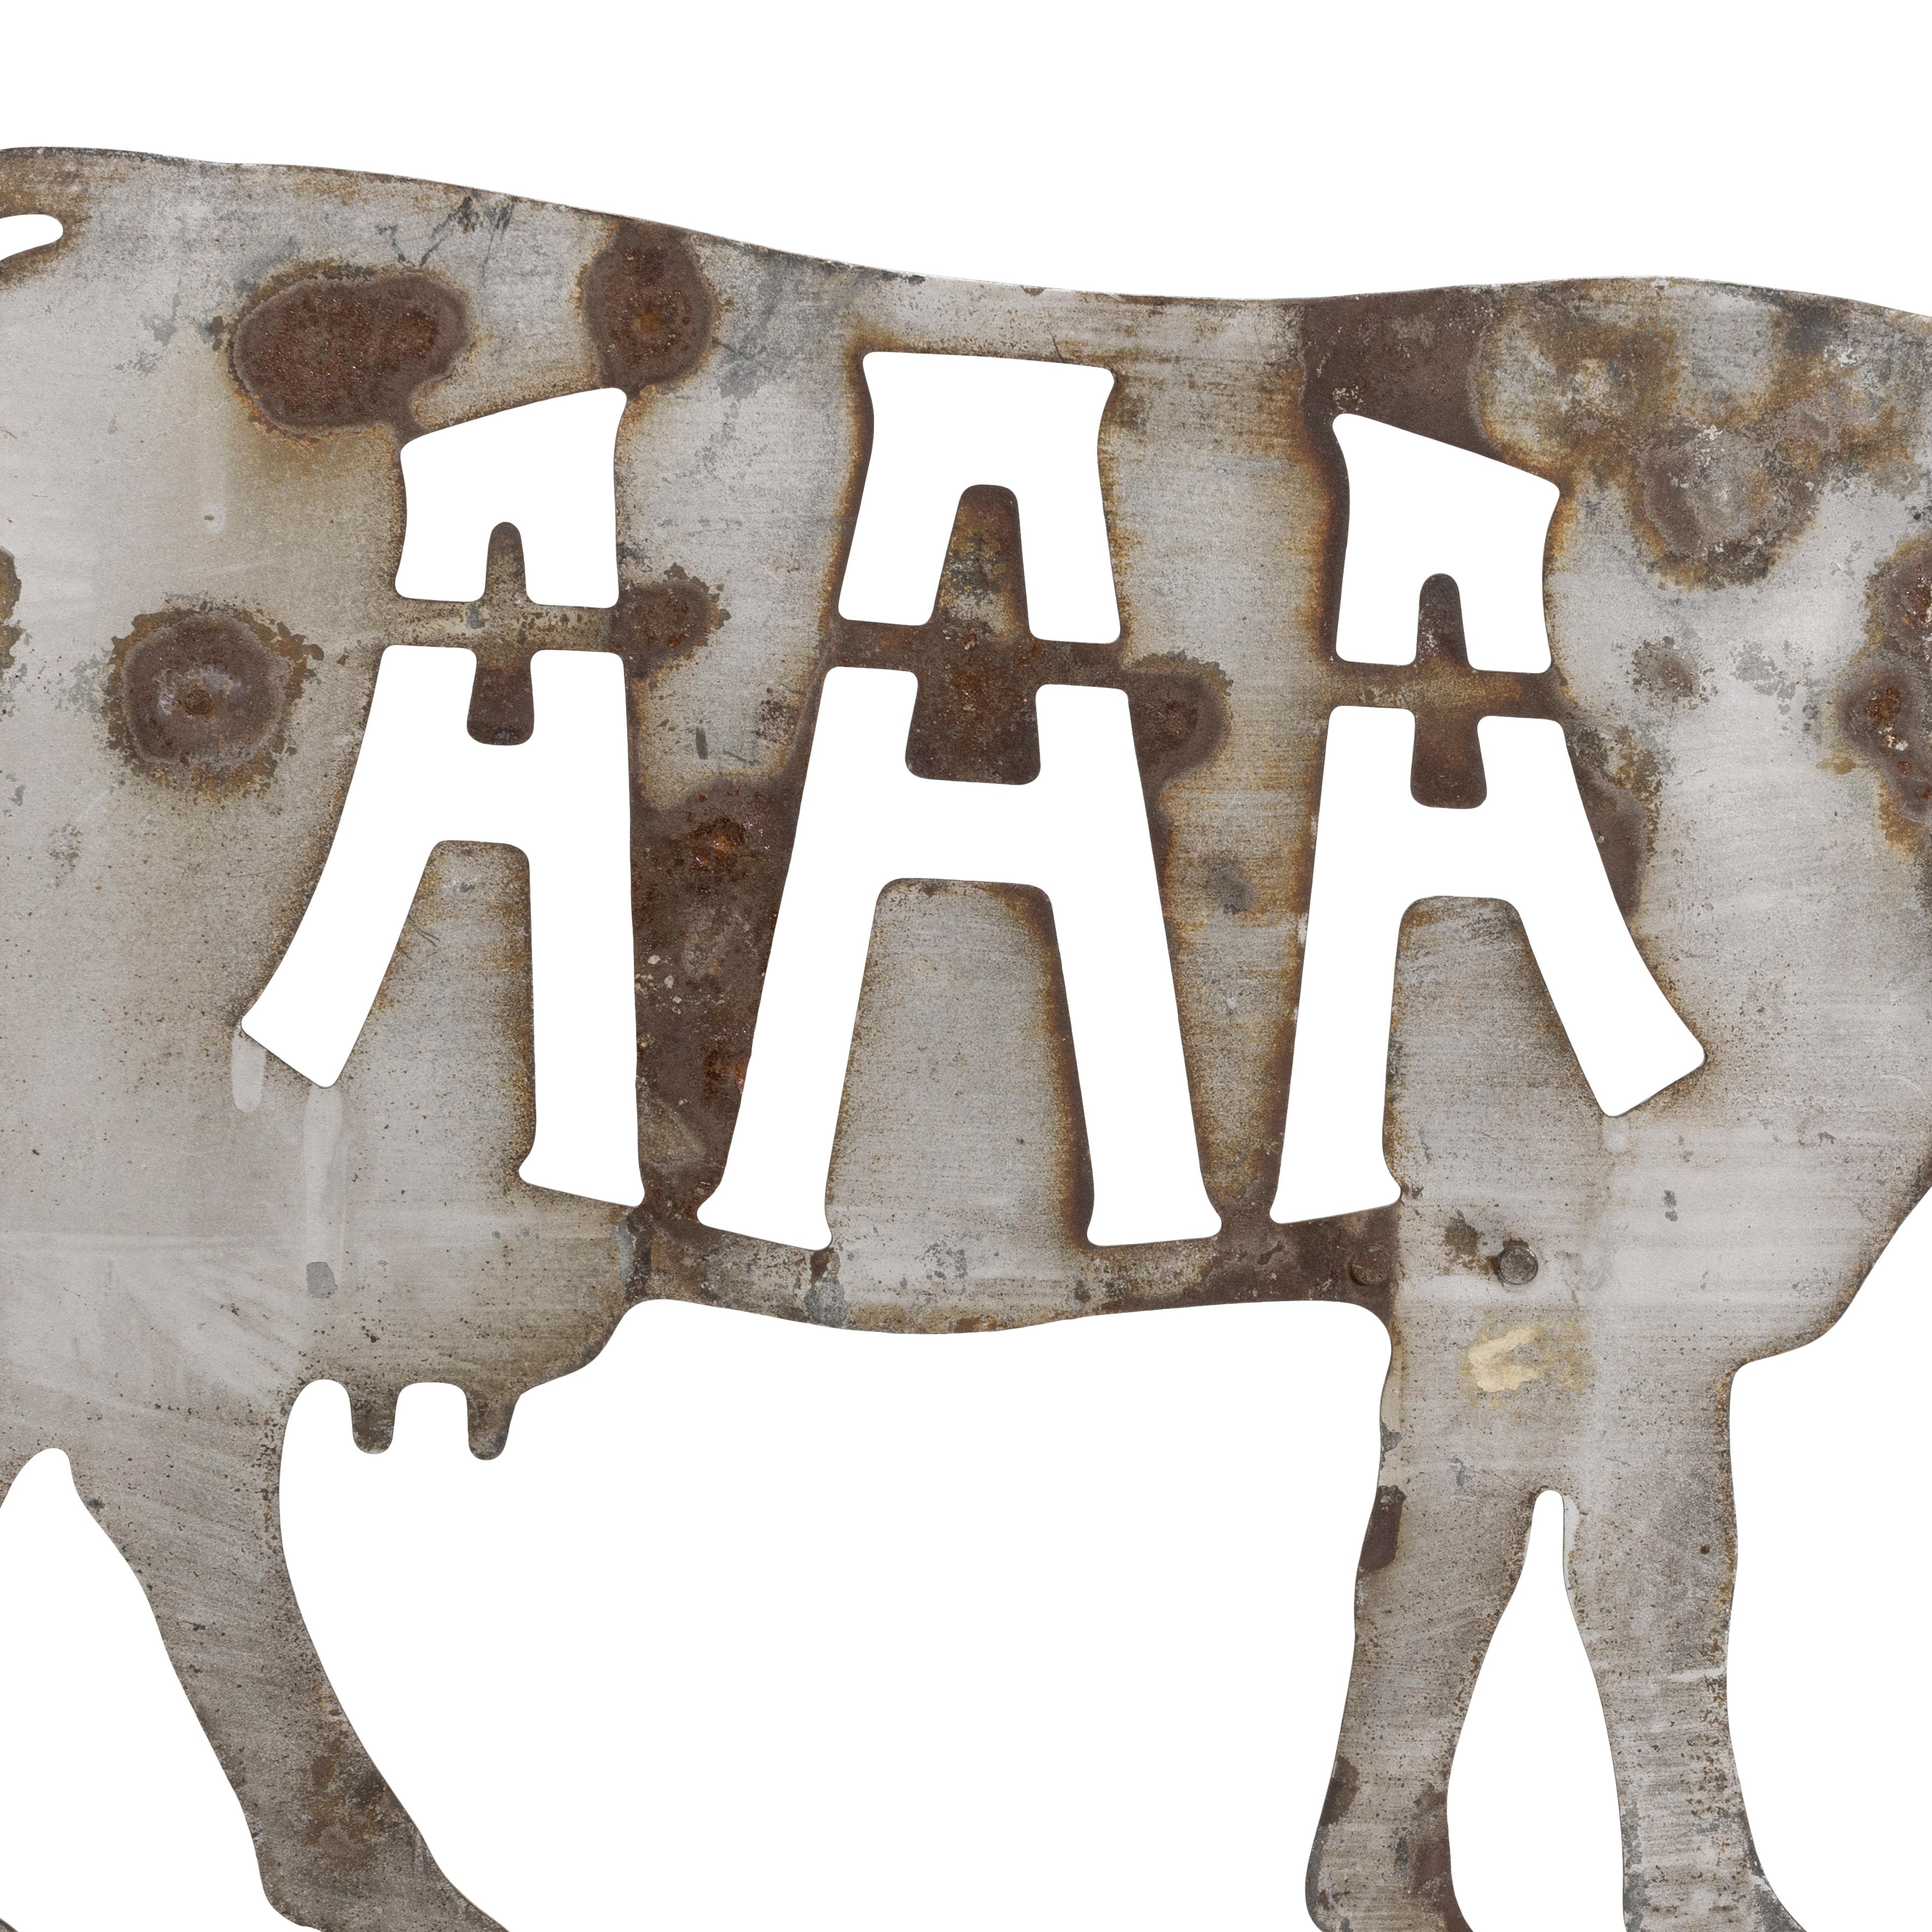 Girouette en forme de vache en fer découpé de l'American Angus Association du XIXe siècle, avec des découpes A-A-A. Quelques 